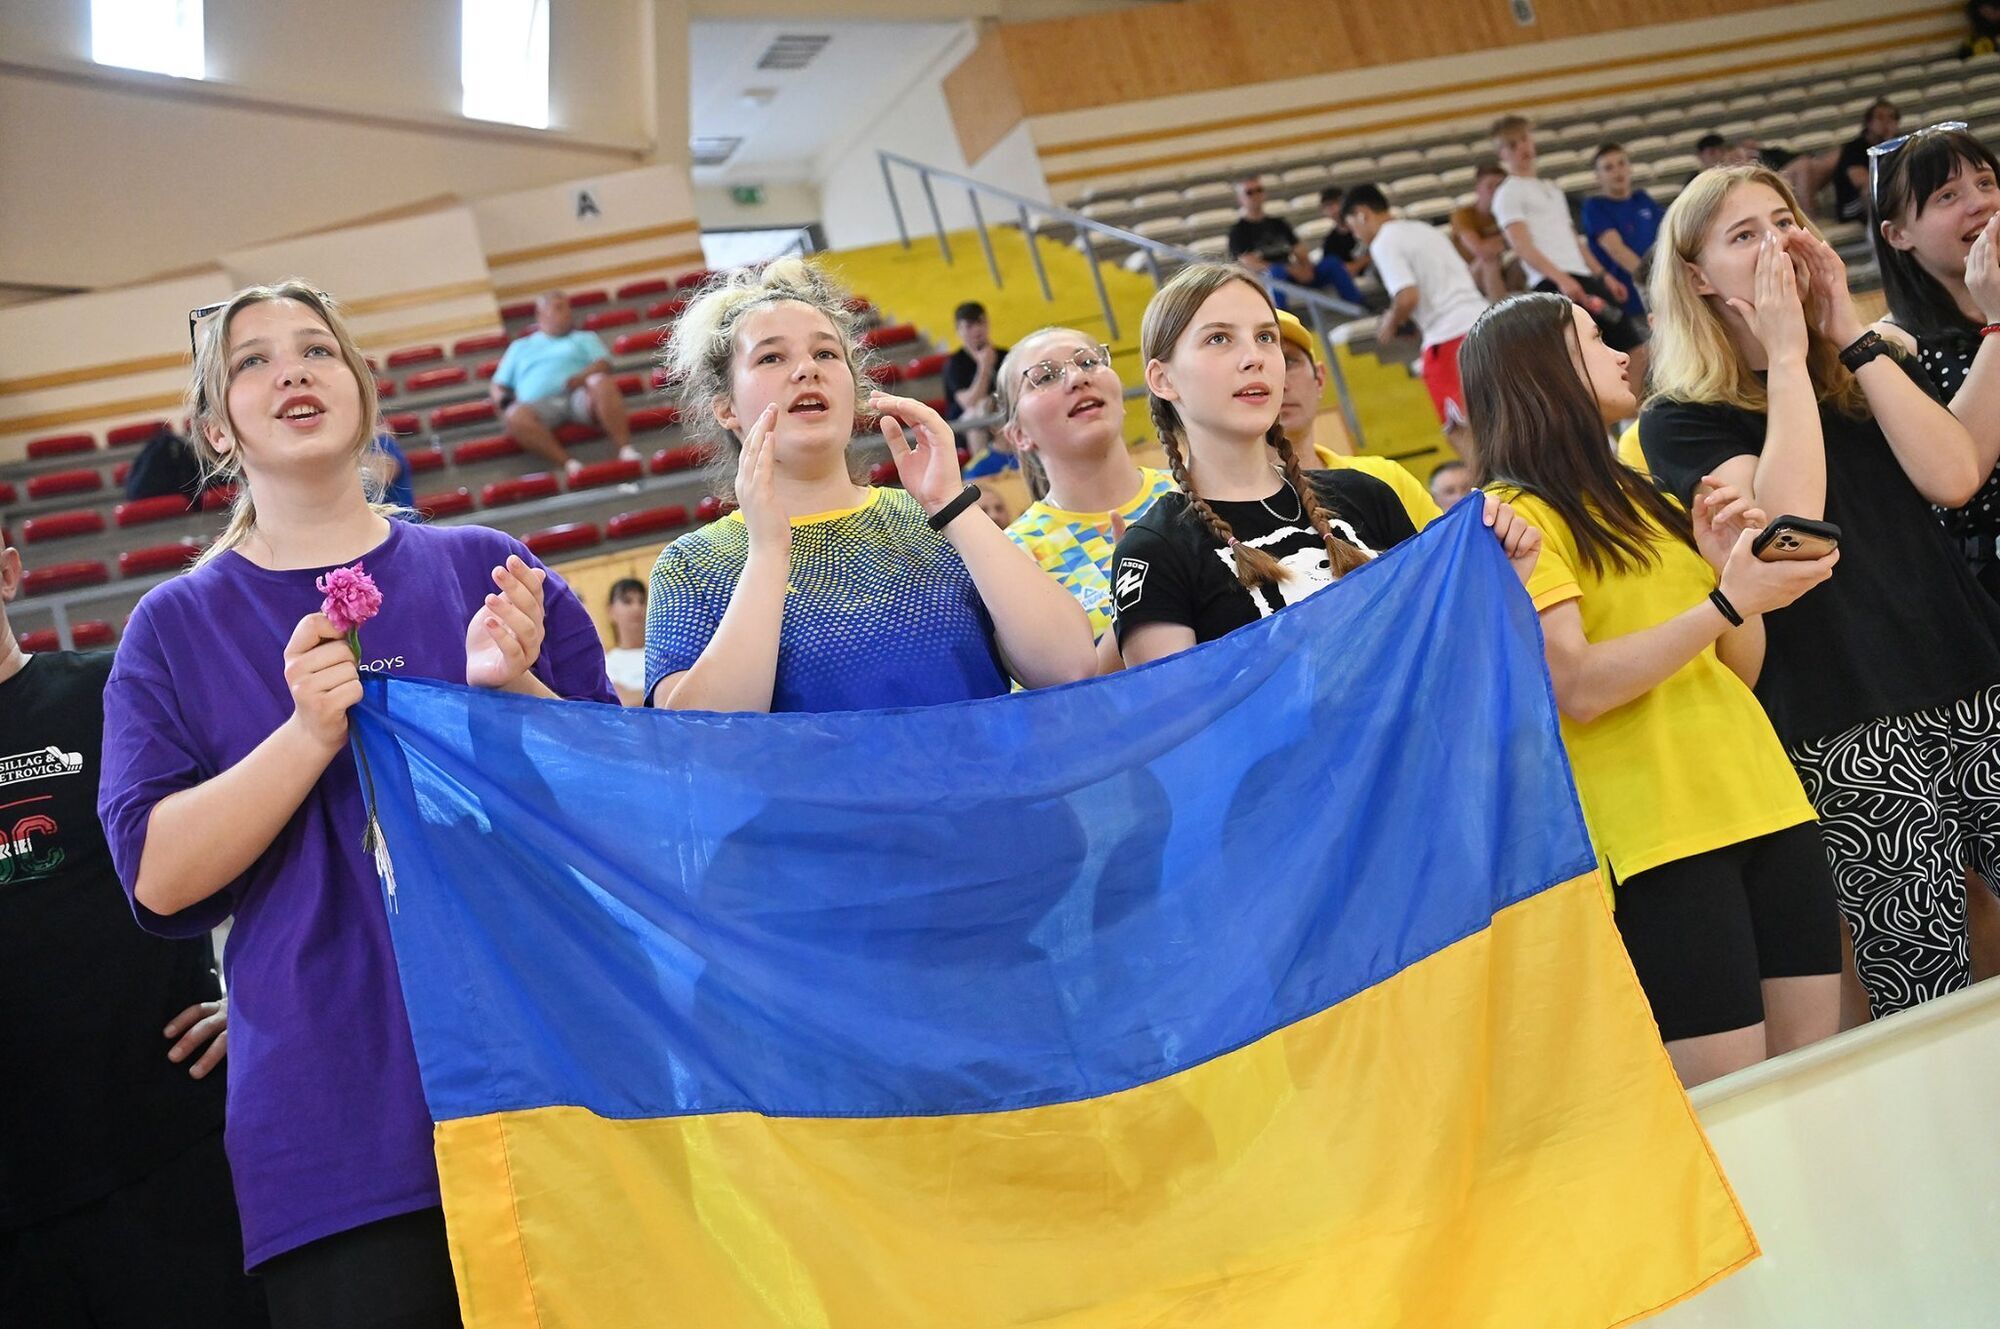 Українку змусили прибрати прапор "Азова" на нагородженні в Угорщині, яка зайняла проросійську позицію